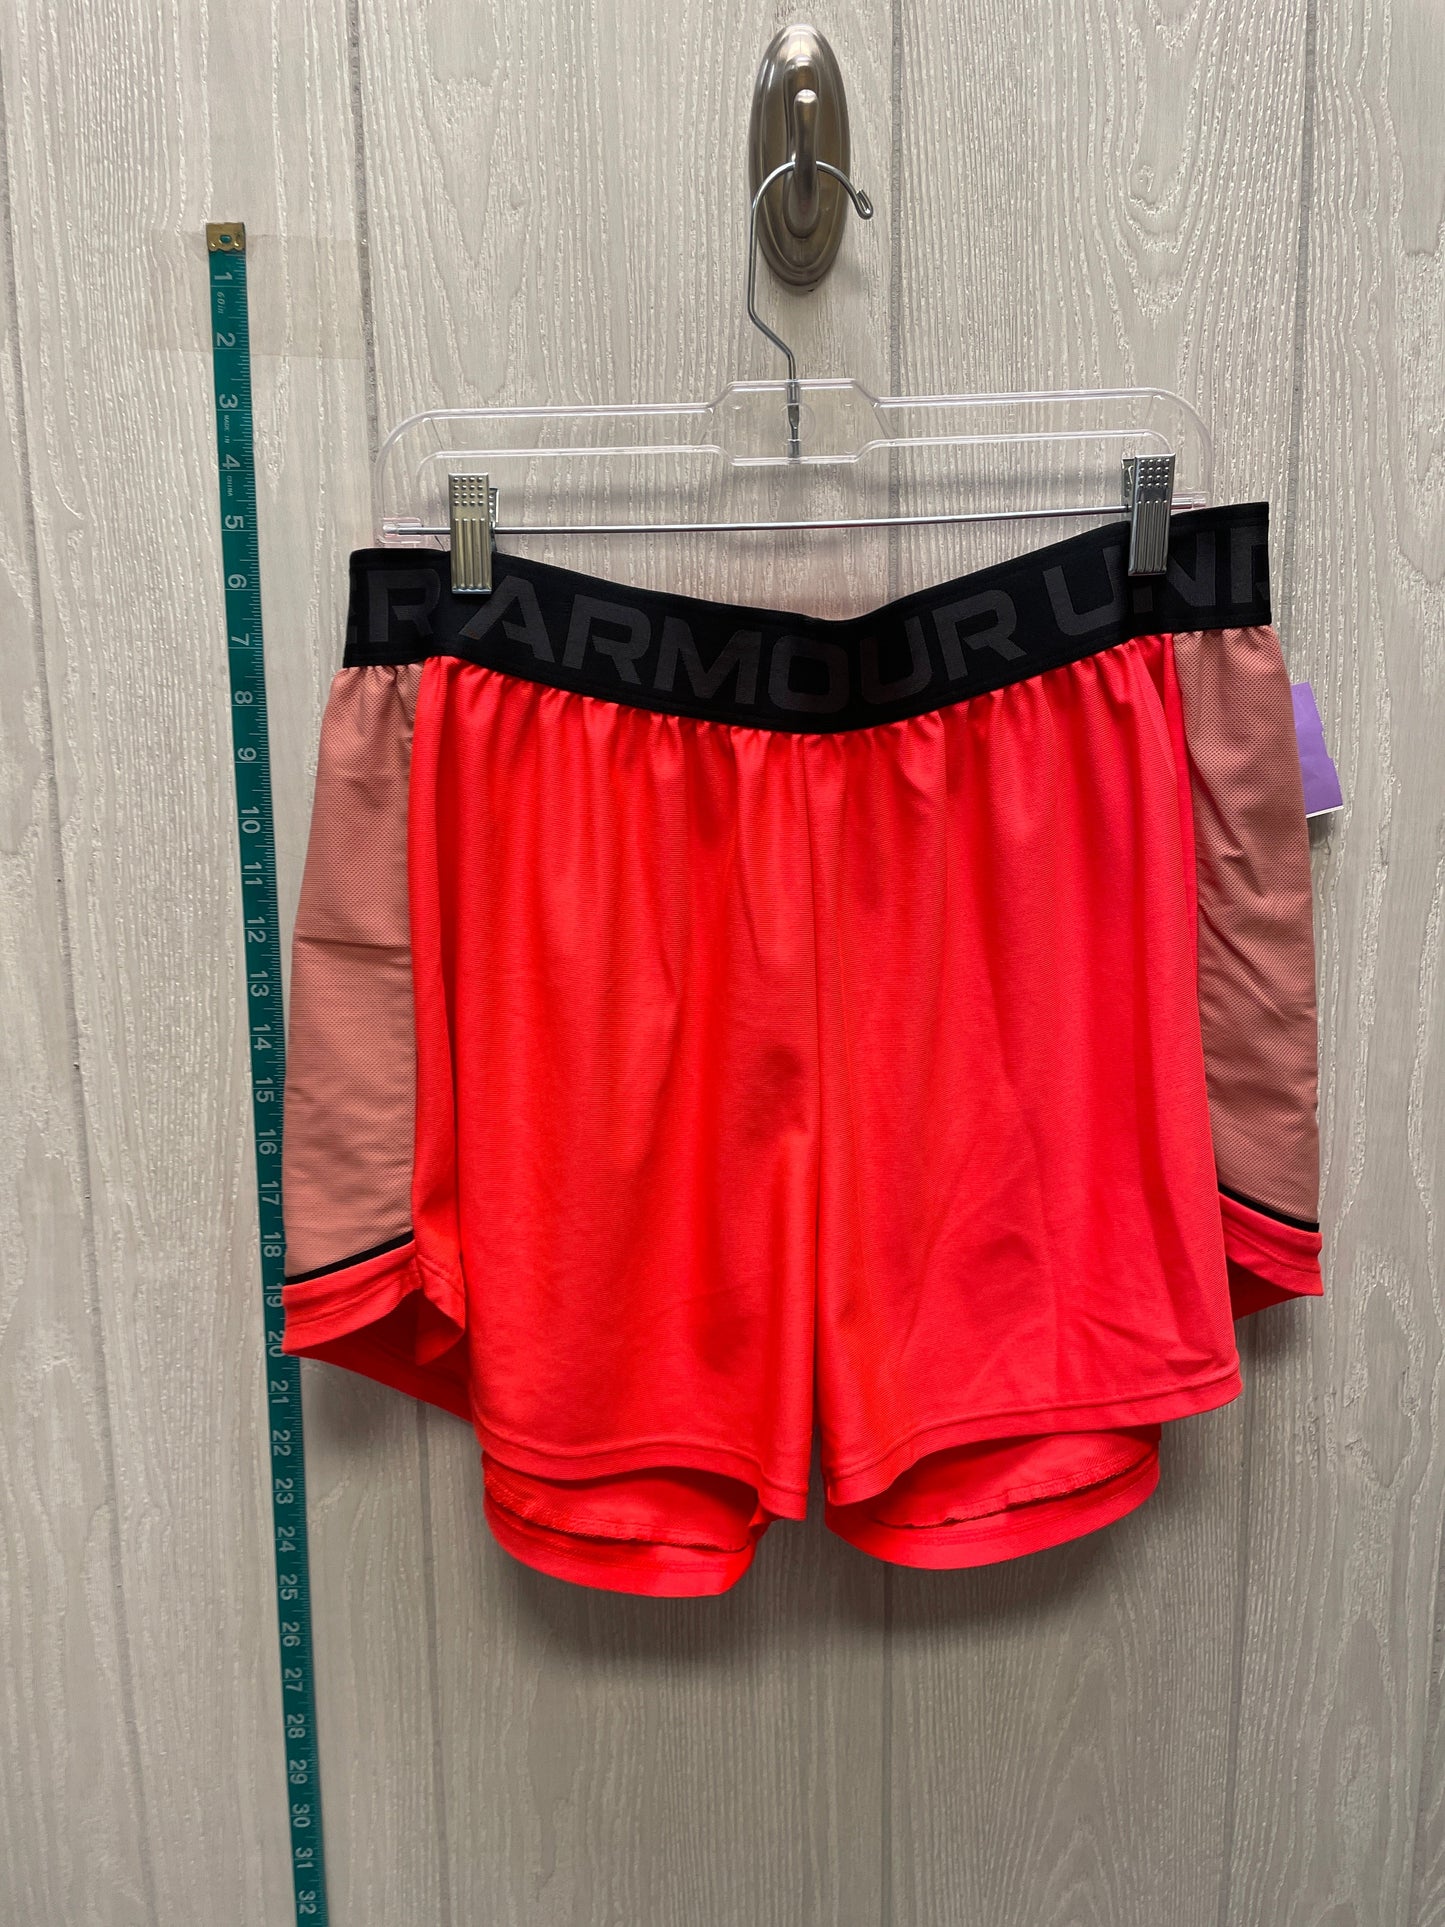 Black & Orange Athletic Shorts Under Armour, Size 1x